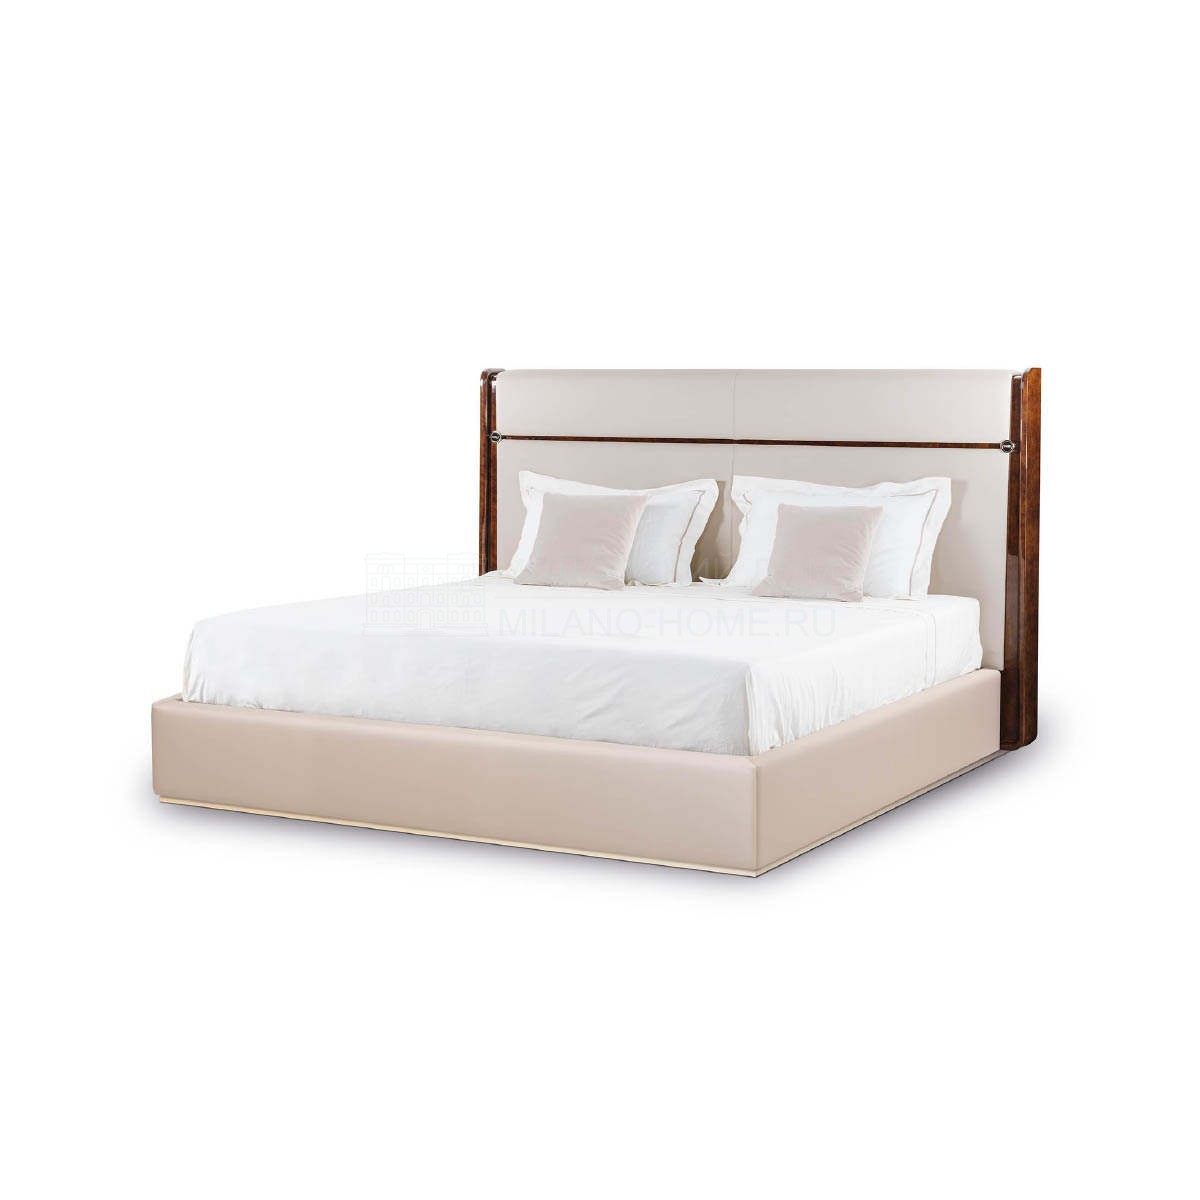 Двуспальная кровать Madison bed из Италии фабрики TURRI